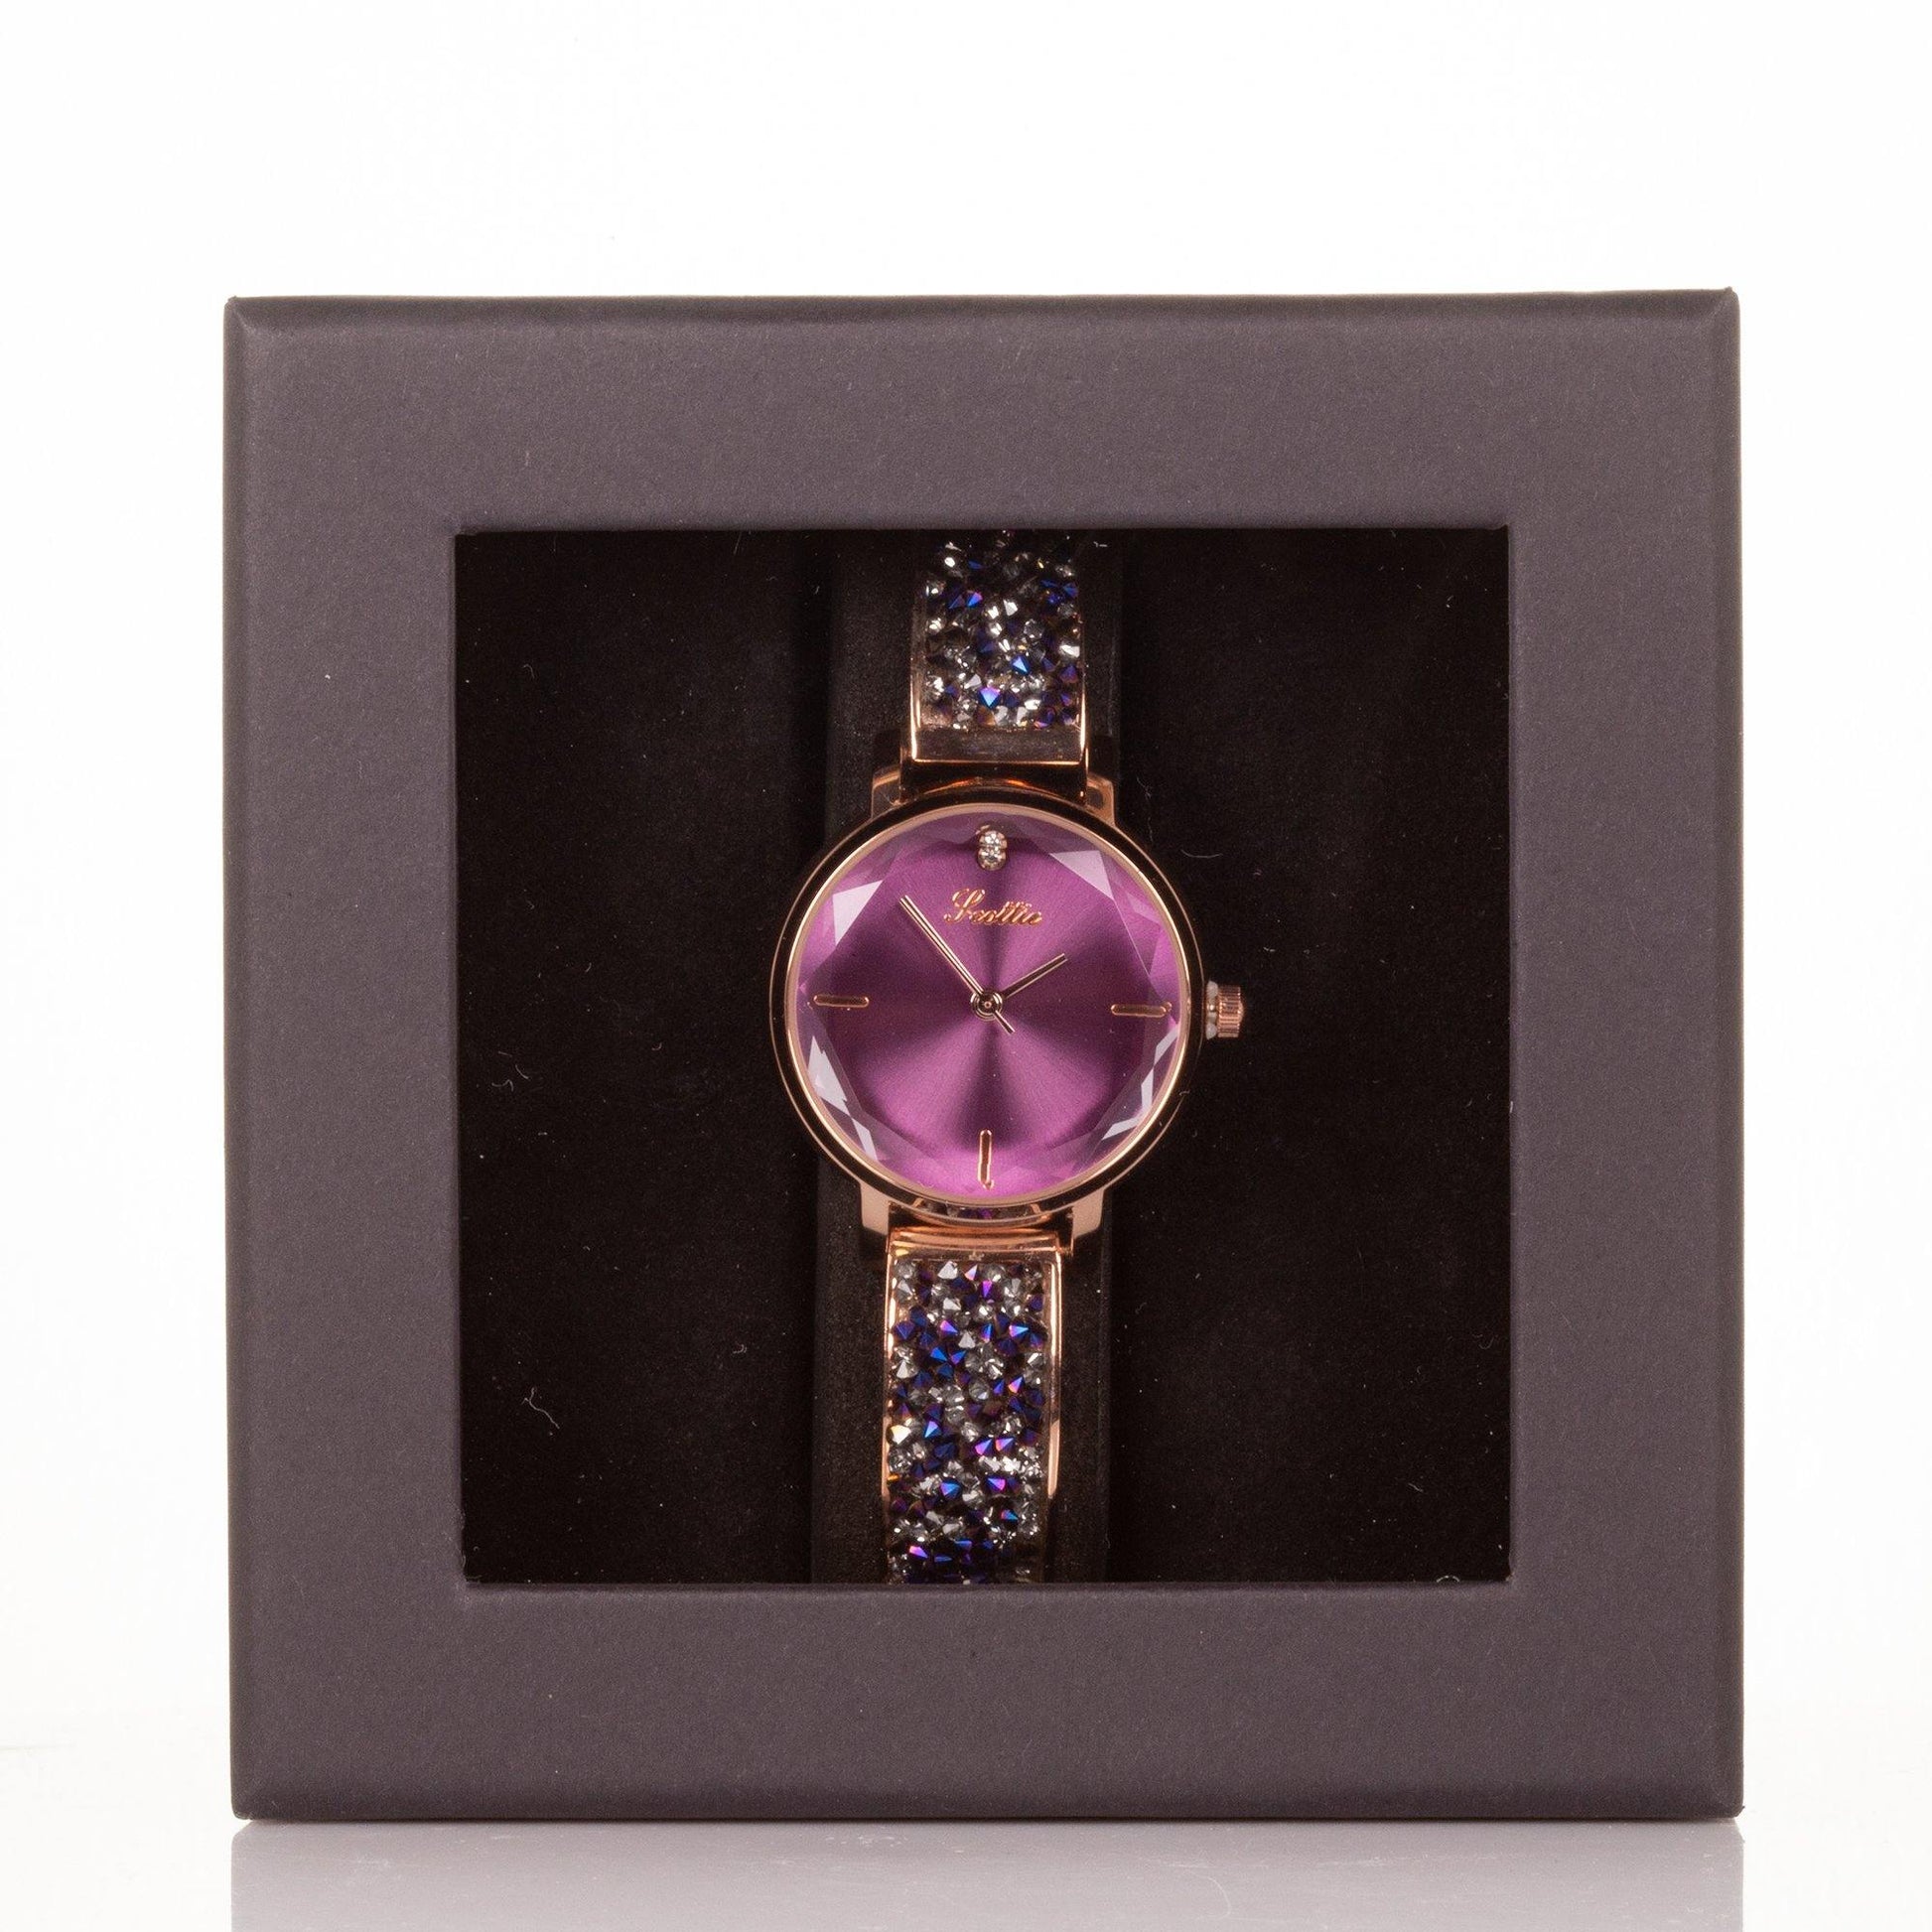 Ceas din Aliaj cu mecanism Miyota de calitate superioară, cutie cadou, cadran Violet - Galeria de Bijuterii